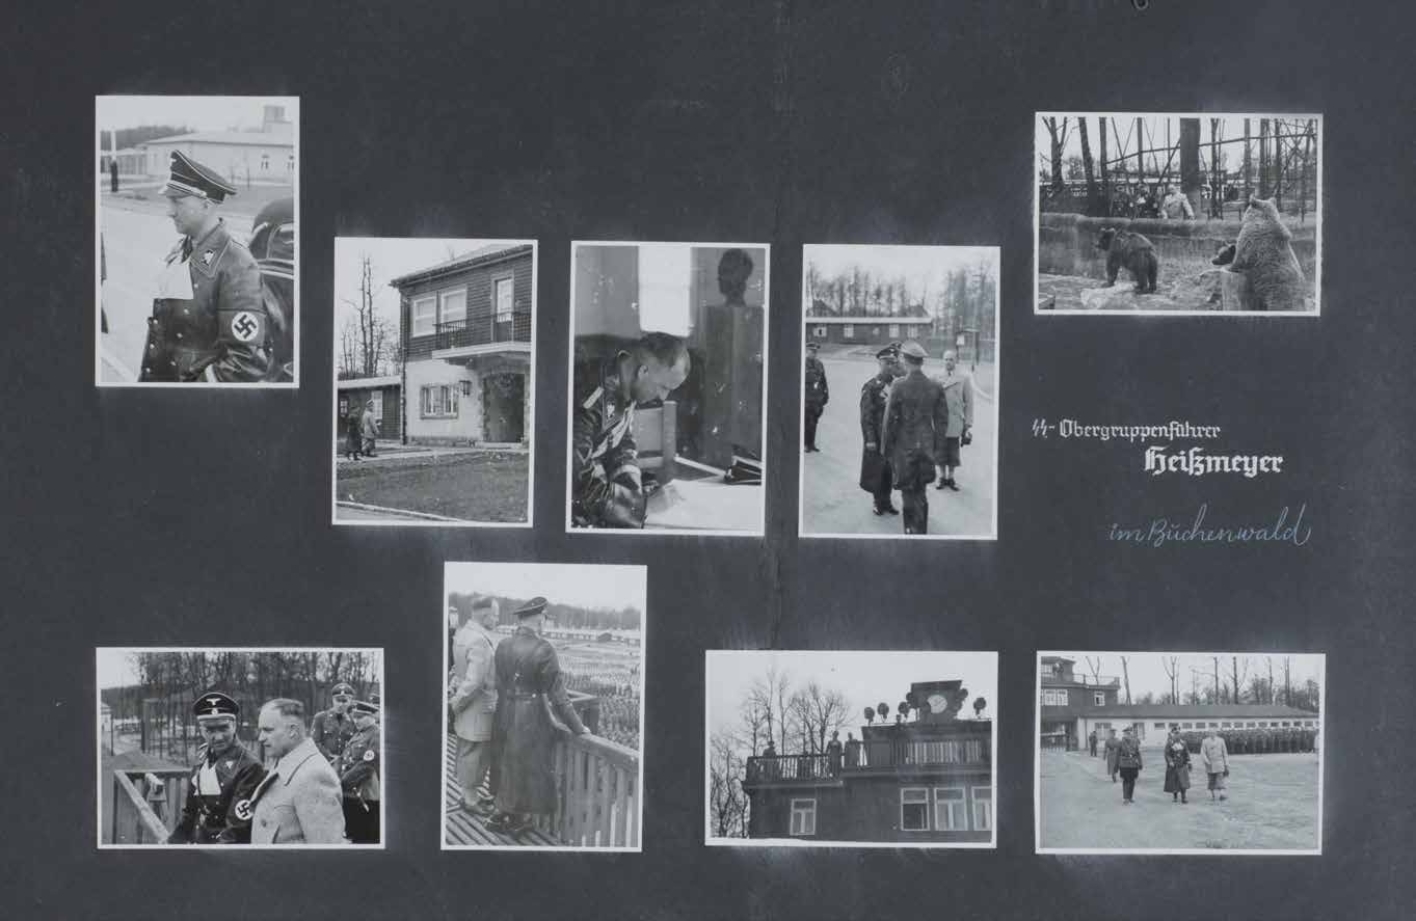 Ausschnitt aus Fotoalbum: SS-Obergruppenführer Heißmeyer in Buchenwald, mehrere Fotografien